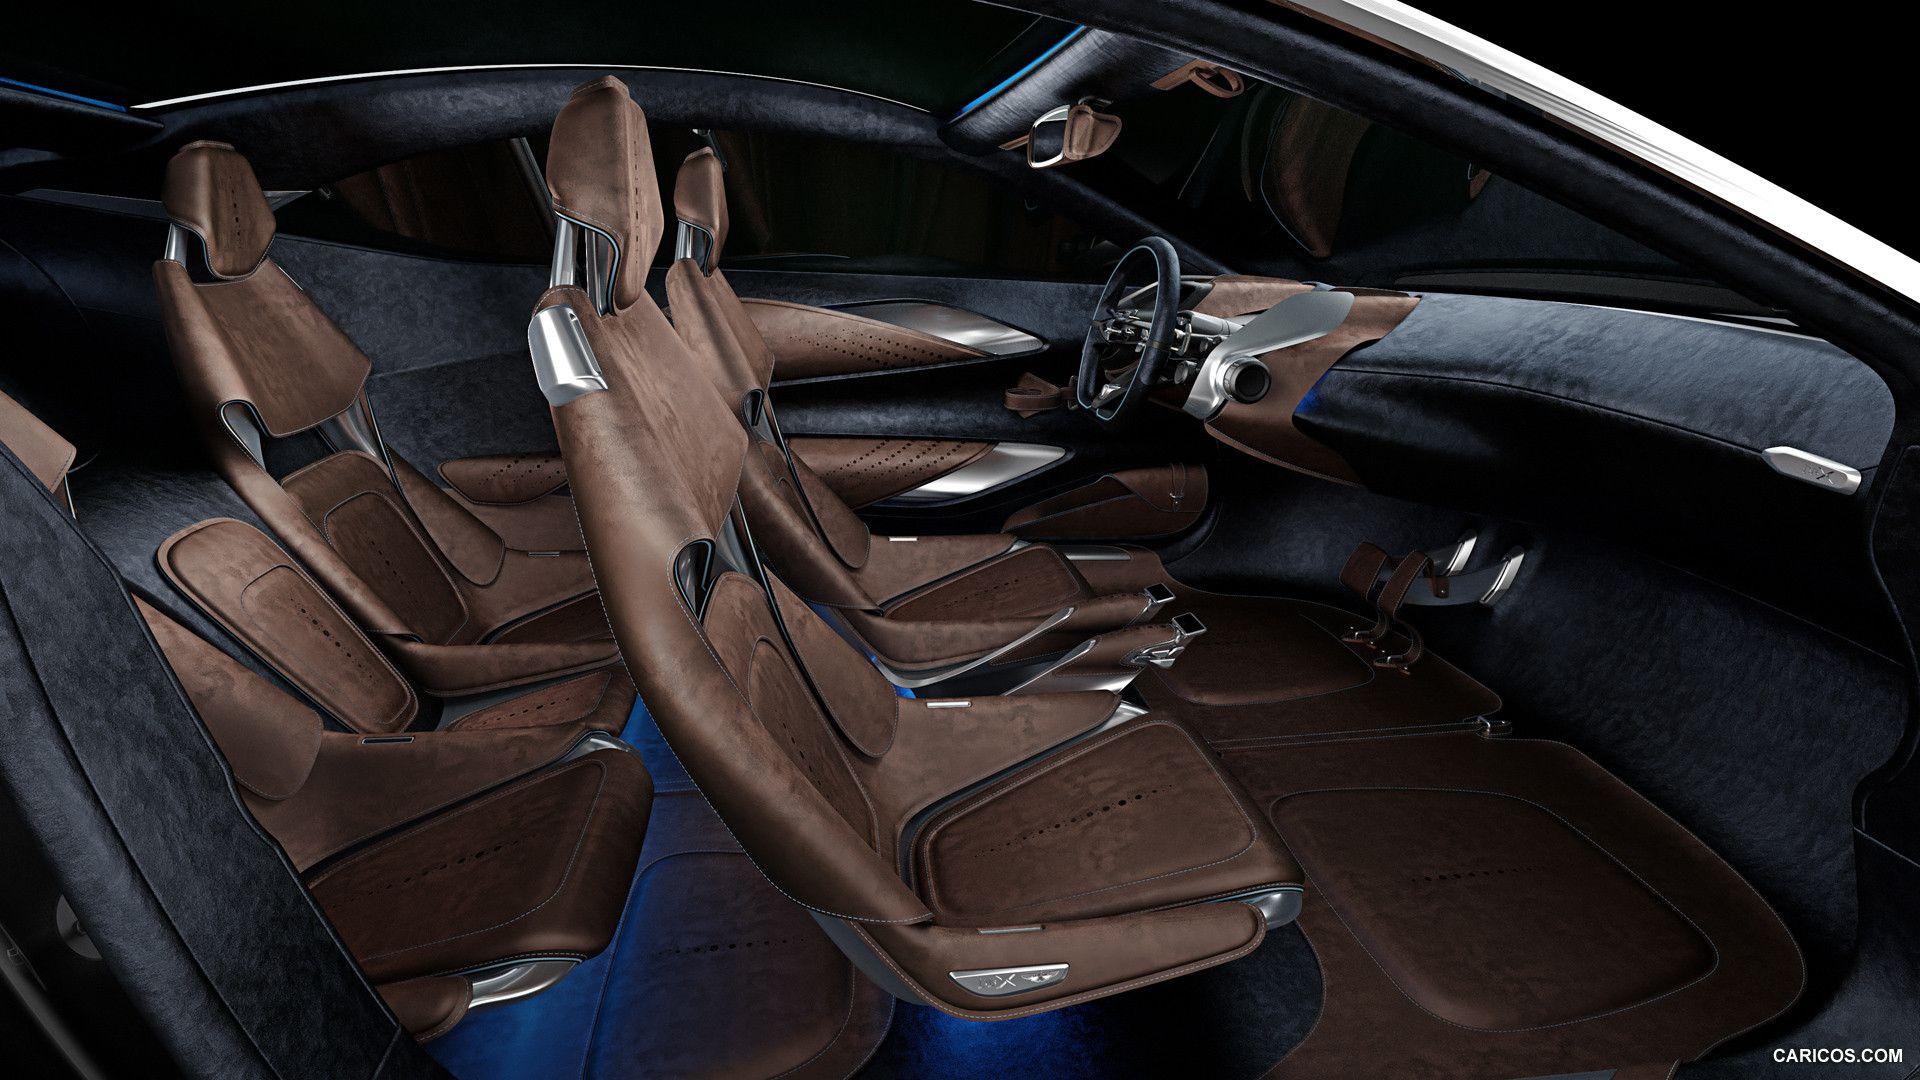 Aston Martin DBX Concept Wallpaper. car interior. Aston